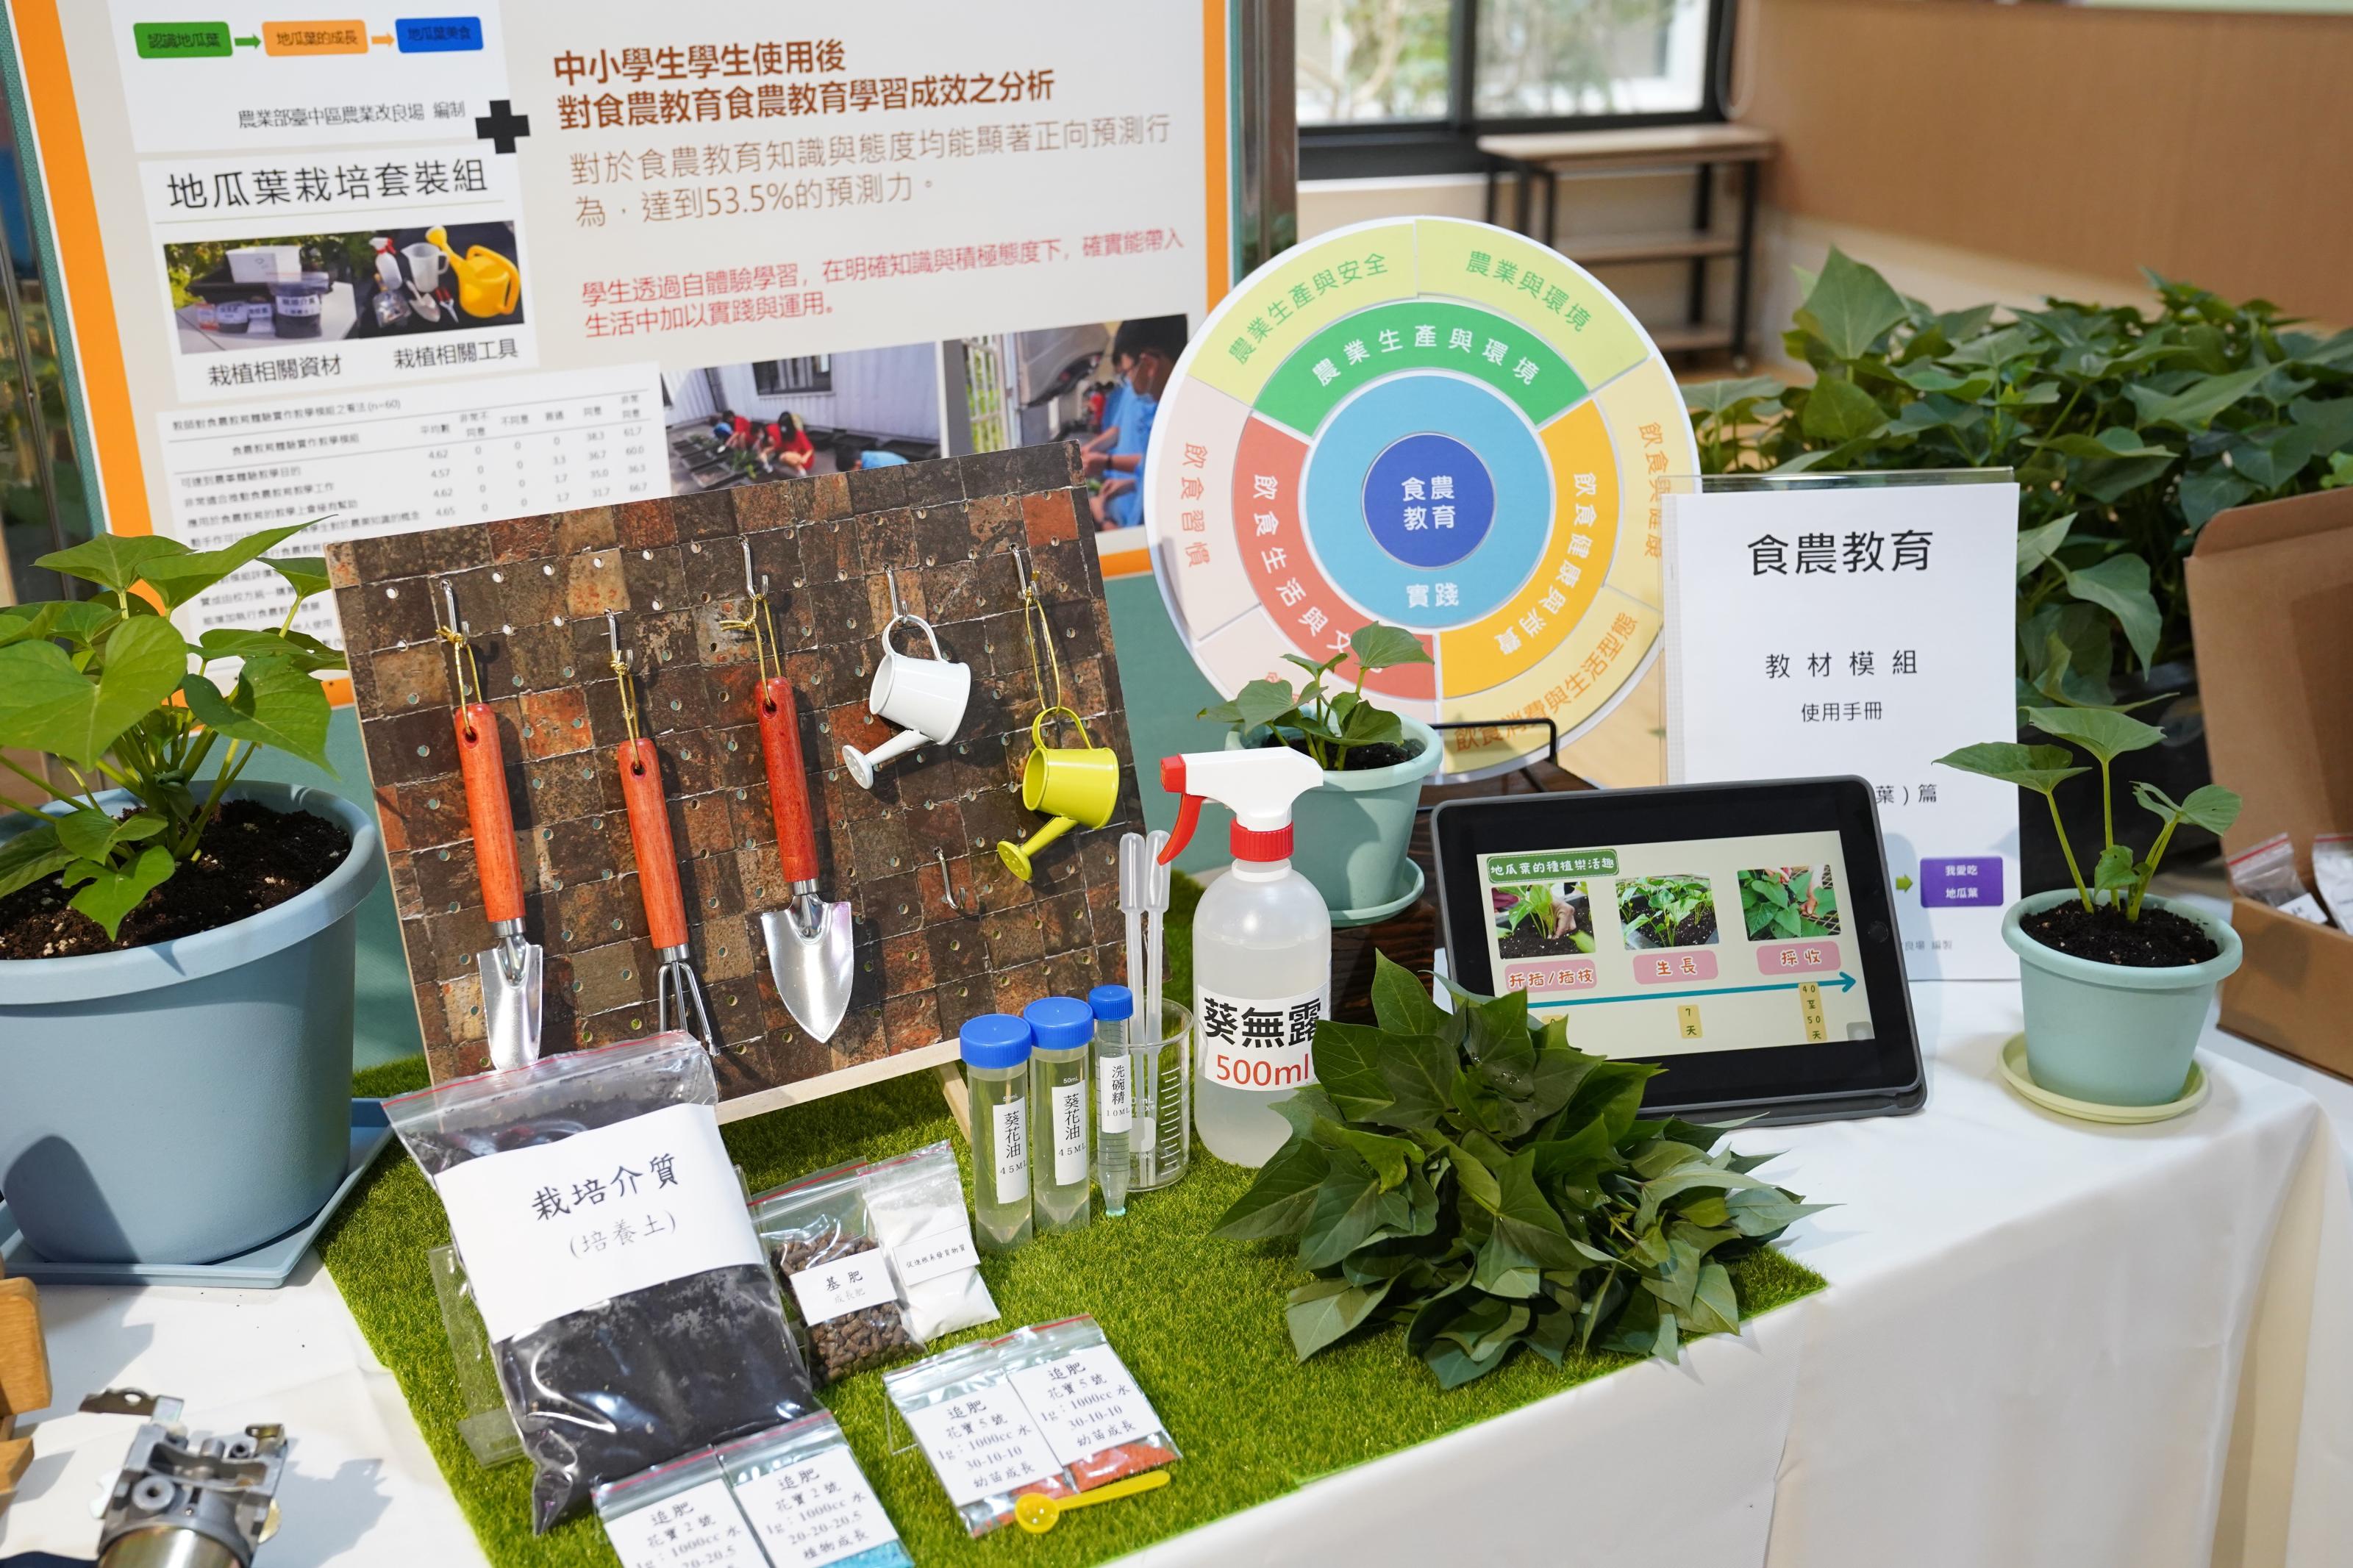 臺中農改場展示食農教育實作體驗型教學課程模組示範與推廣